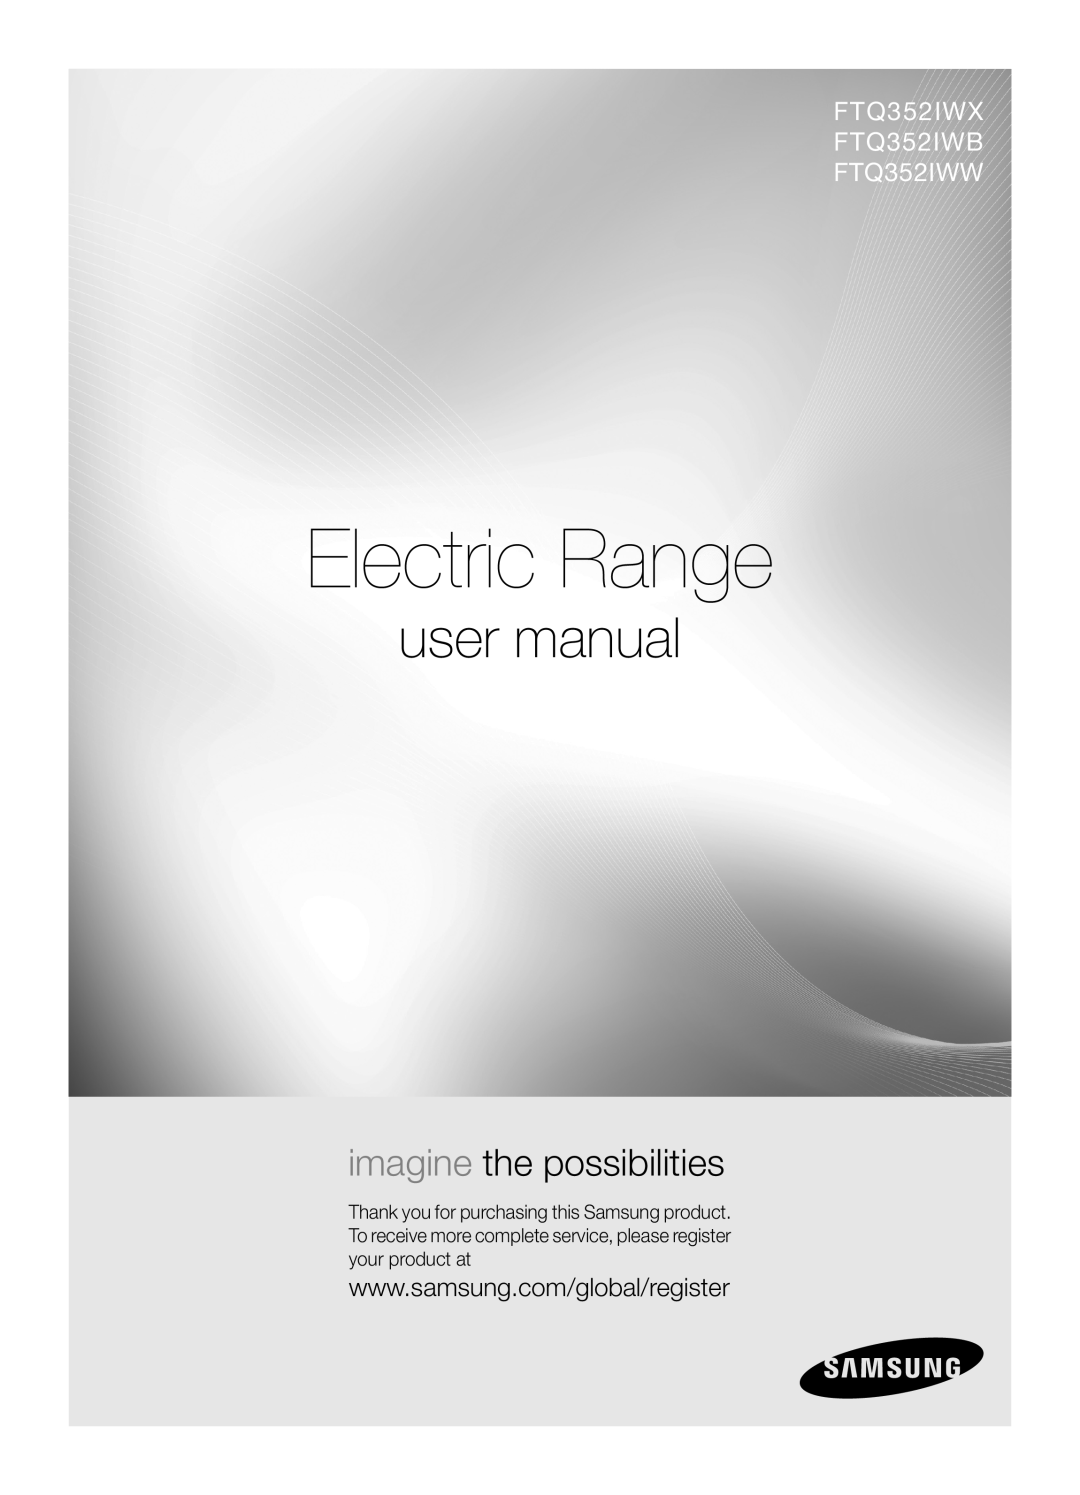 Samsung user manual Electric Range, FTQ352IWX FTQ352IWB FTQ352IWW, imagine the possibilities 